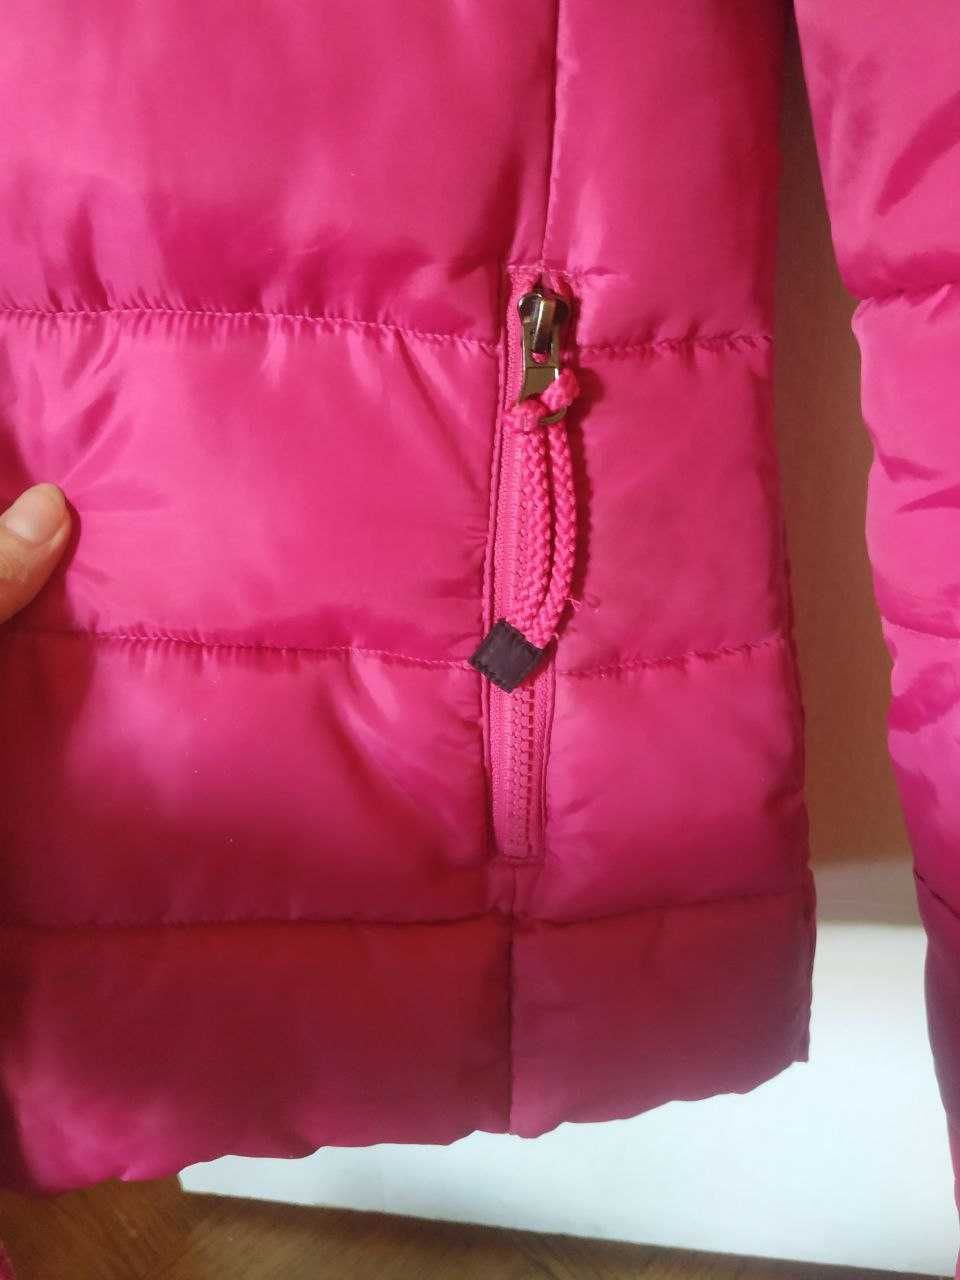 Куртка зимняя женская, пуховик очень теплый, размер S